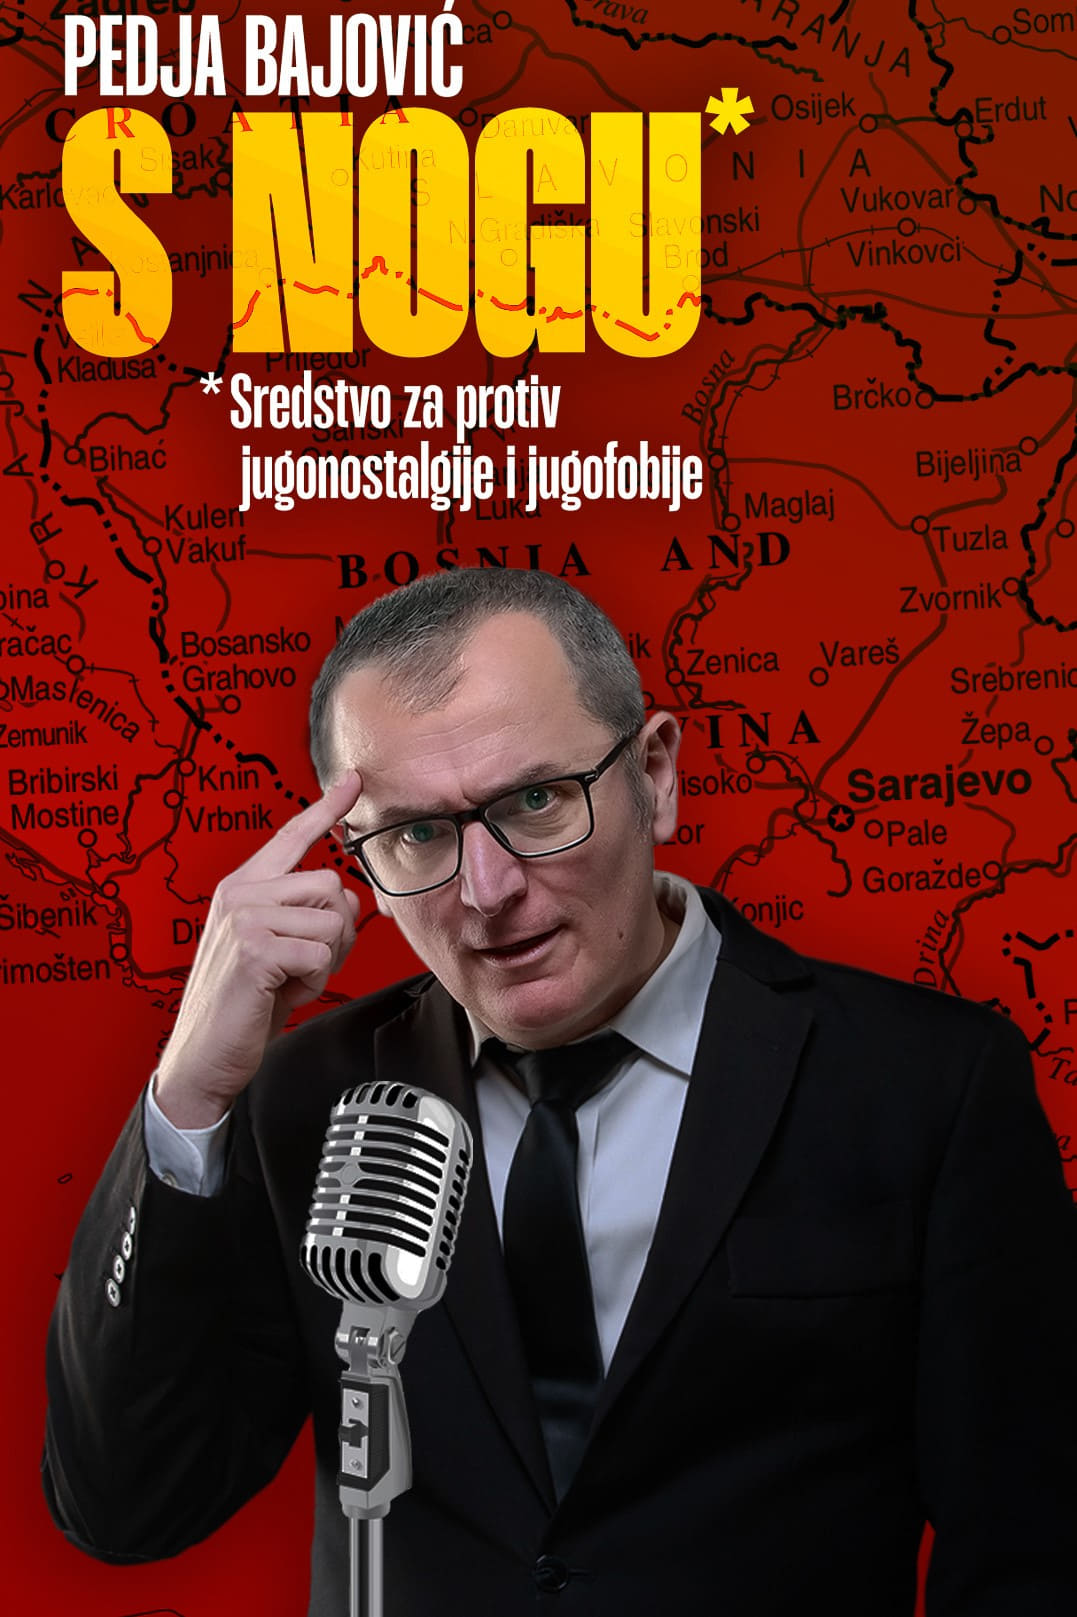 Pedja Bajovic: A Quick Comedy